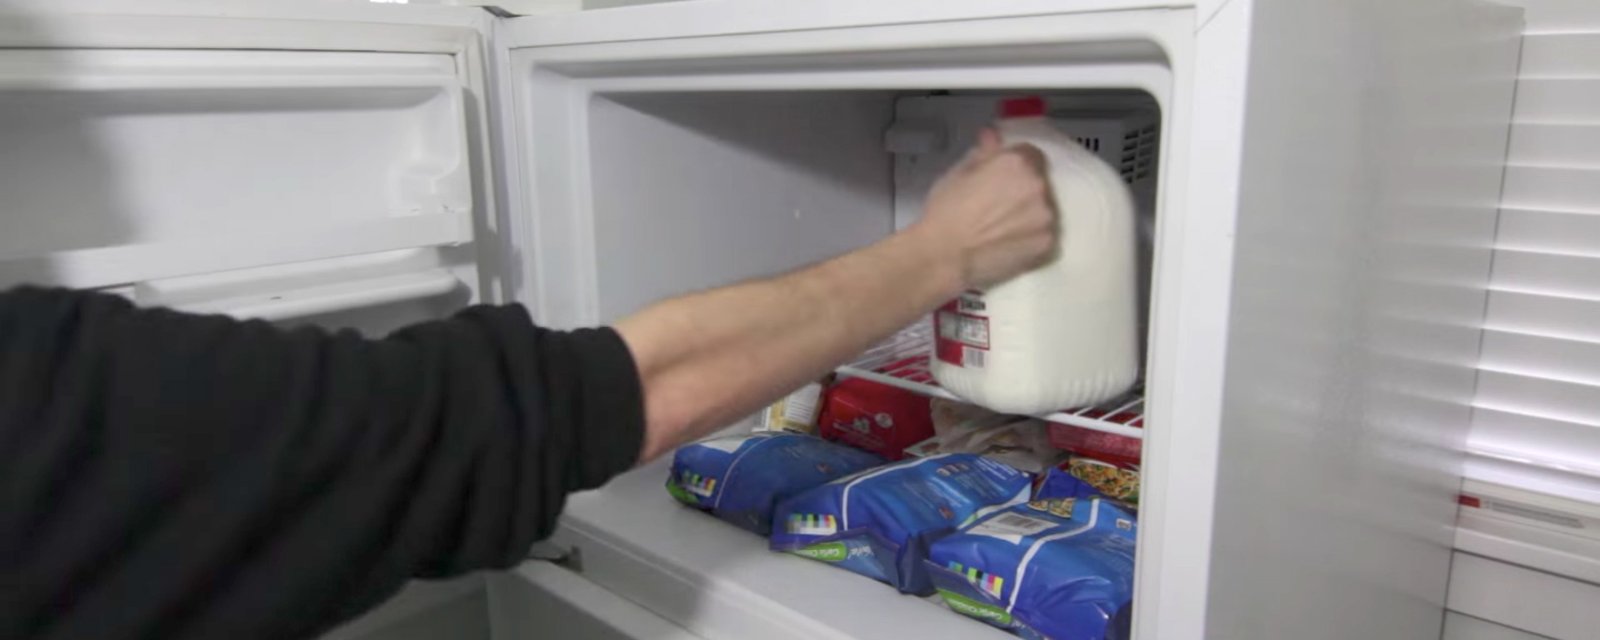 Le lait, ça se congèle! Il y a d'autres produits laitiers que vous pouvez congeler aussi...